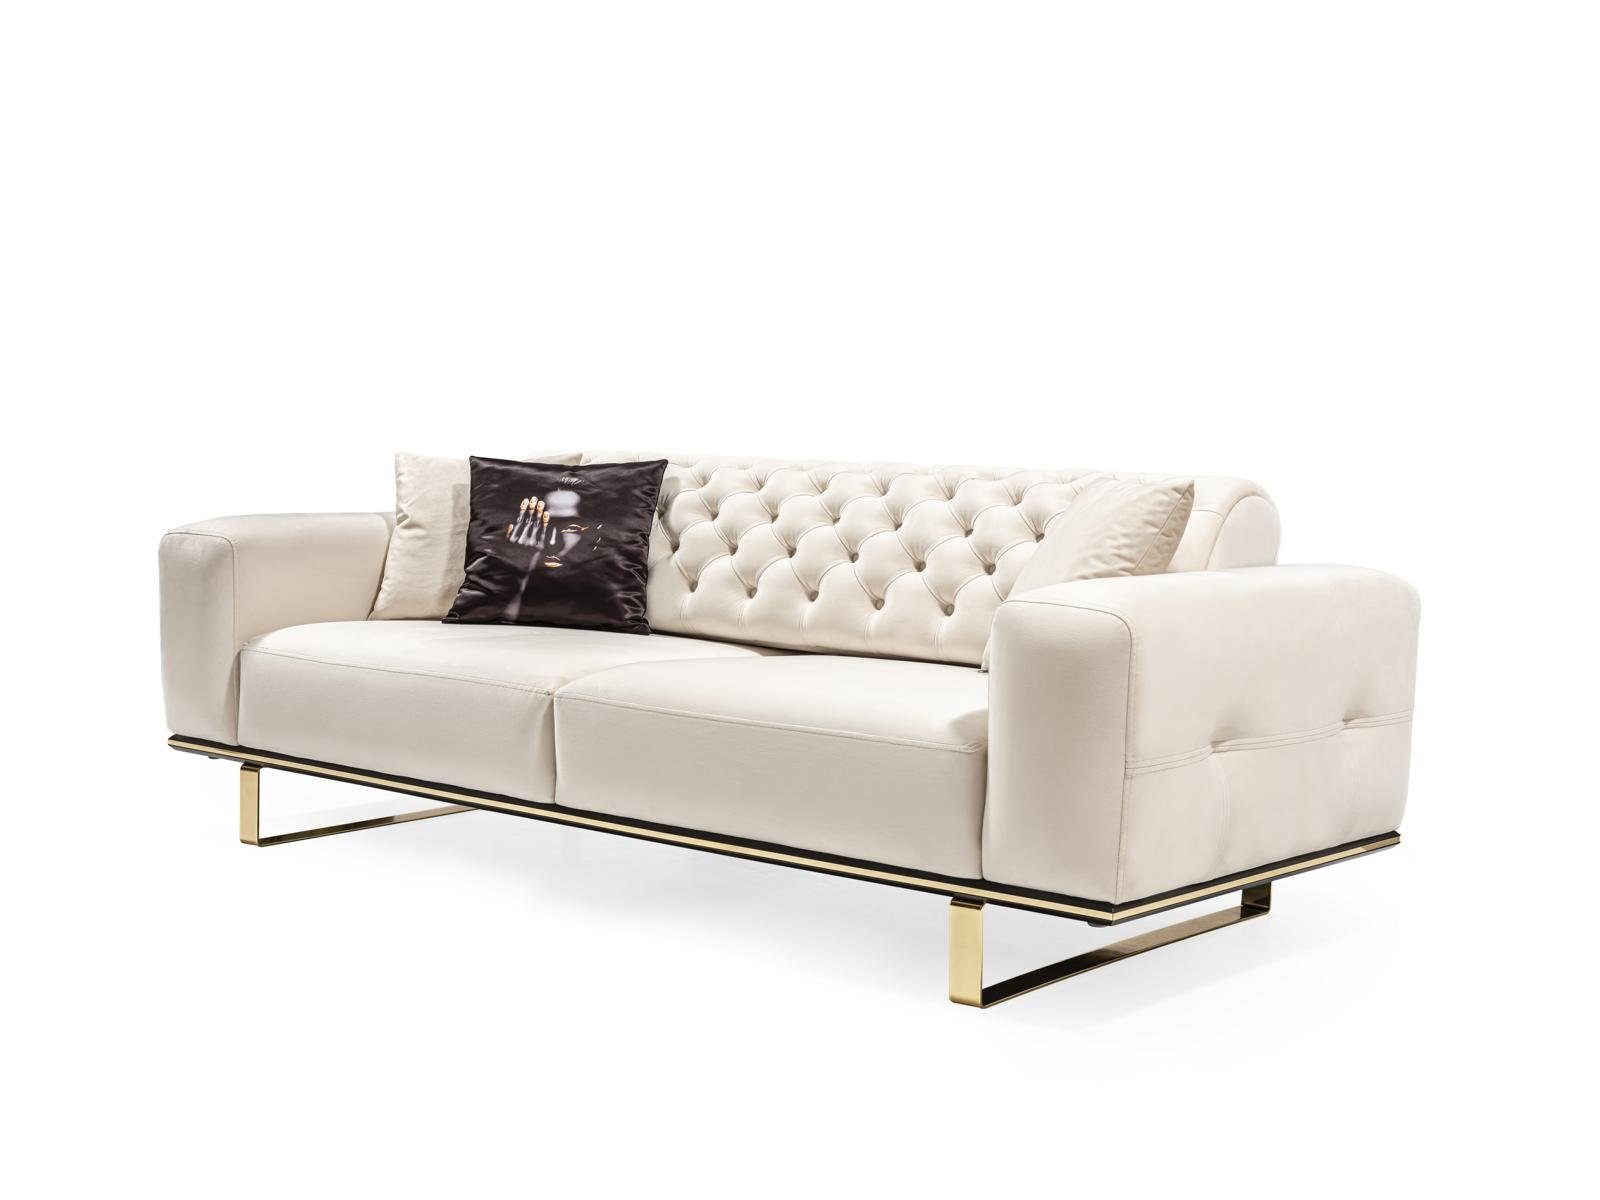 JVmoebel 3-Sitzer Sofa 3 Sitzer Designer Luxus Wohnzimmer Möbel Chesterfield Polster